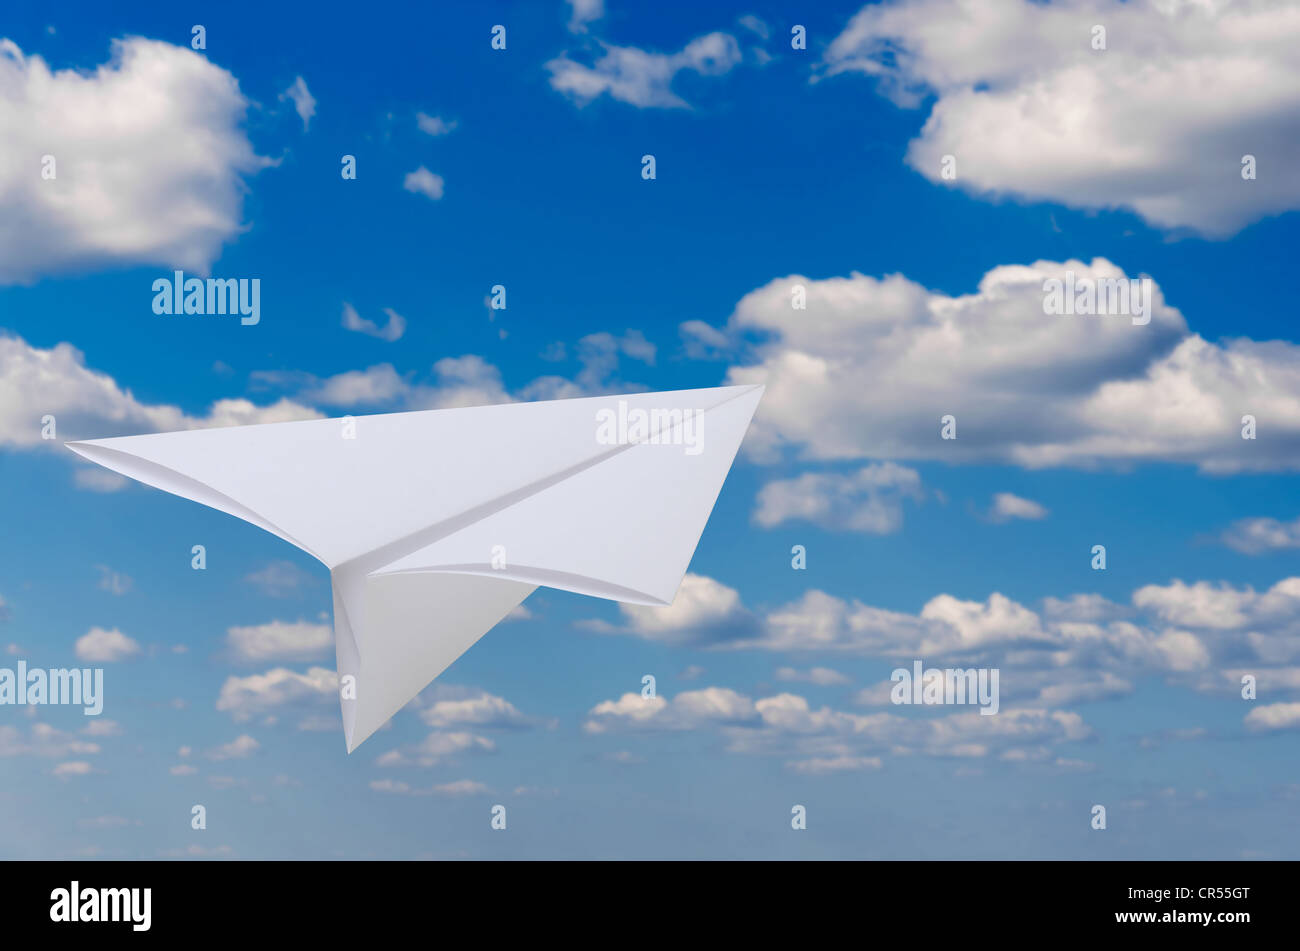 Vol d'un avion de papier contre le ciel bleu et nuages Banque D'Images